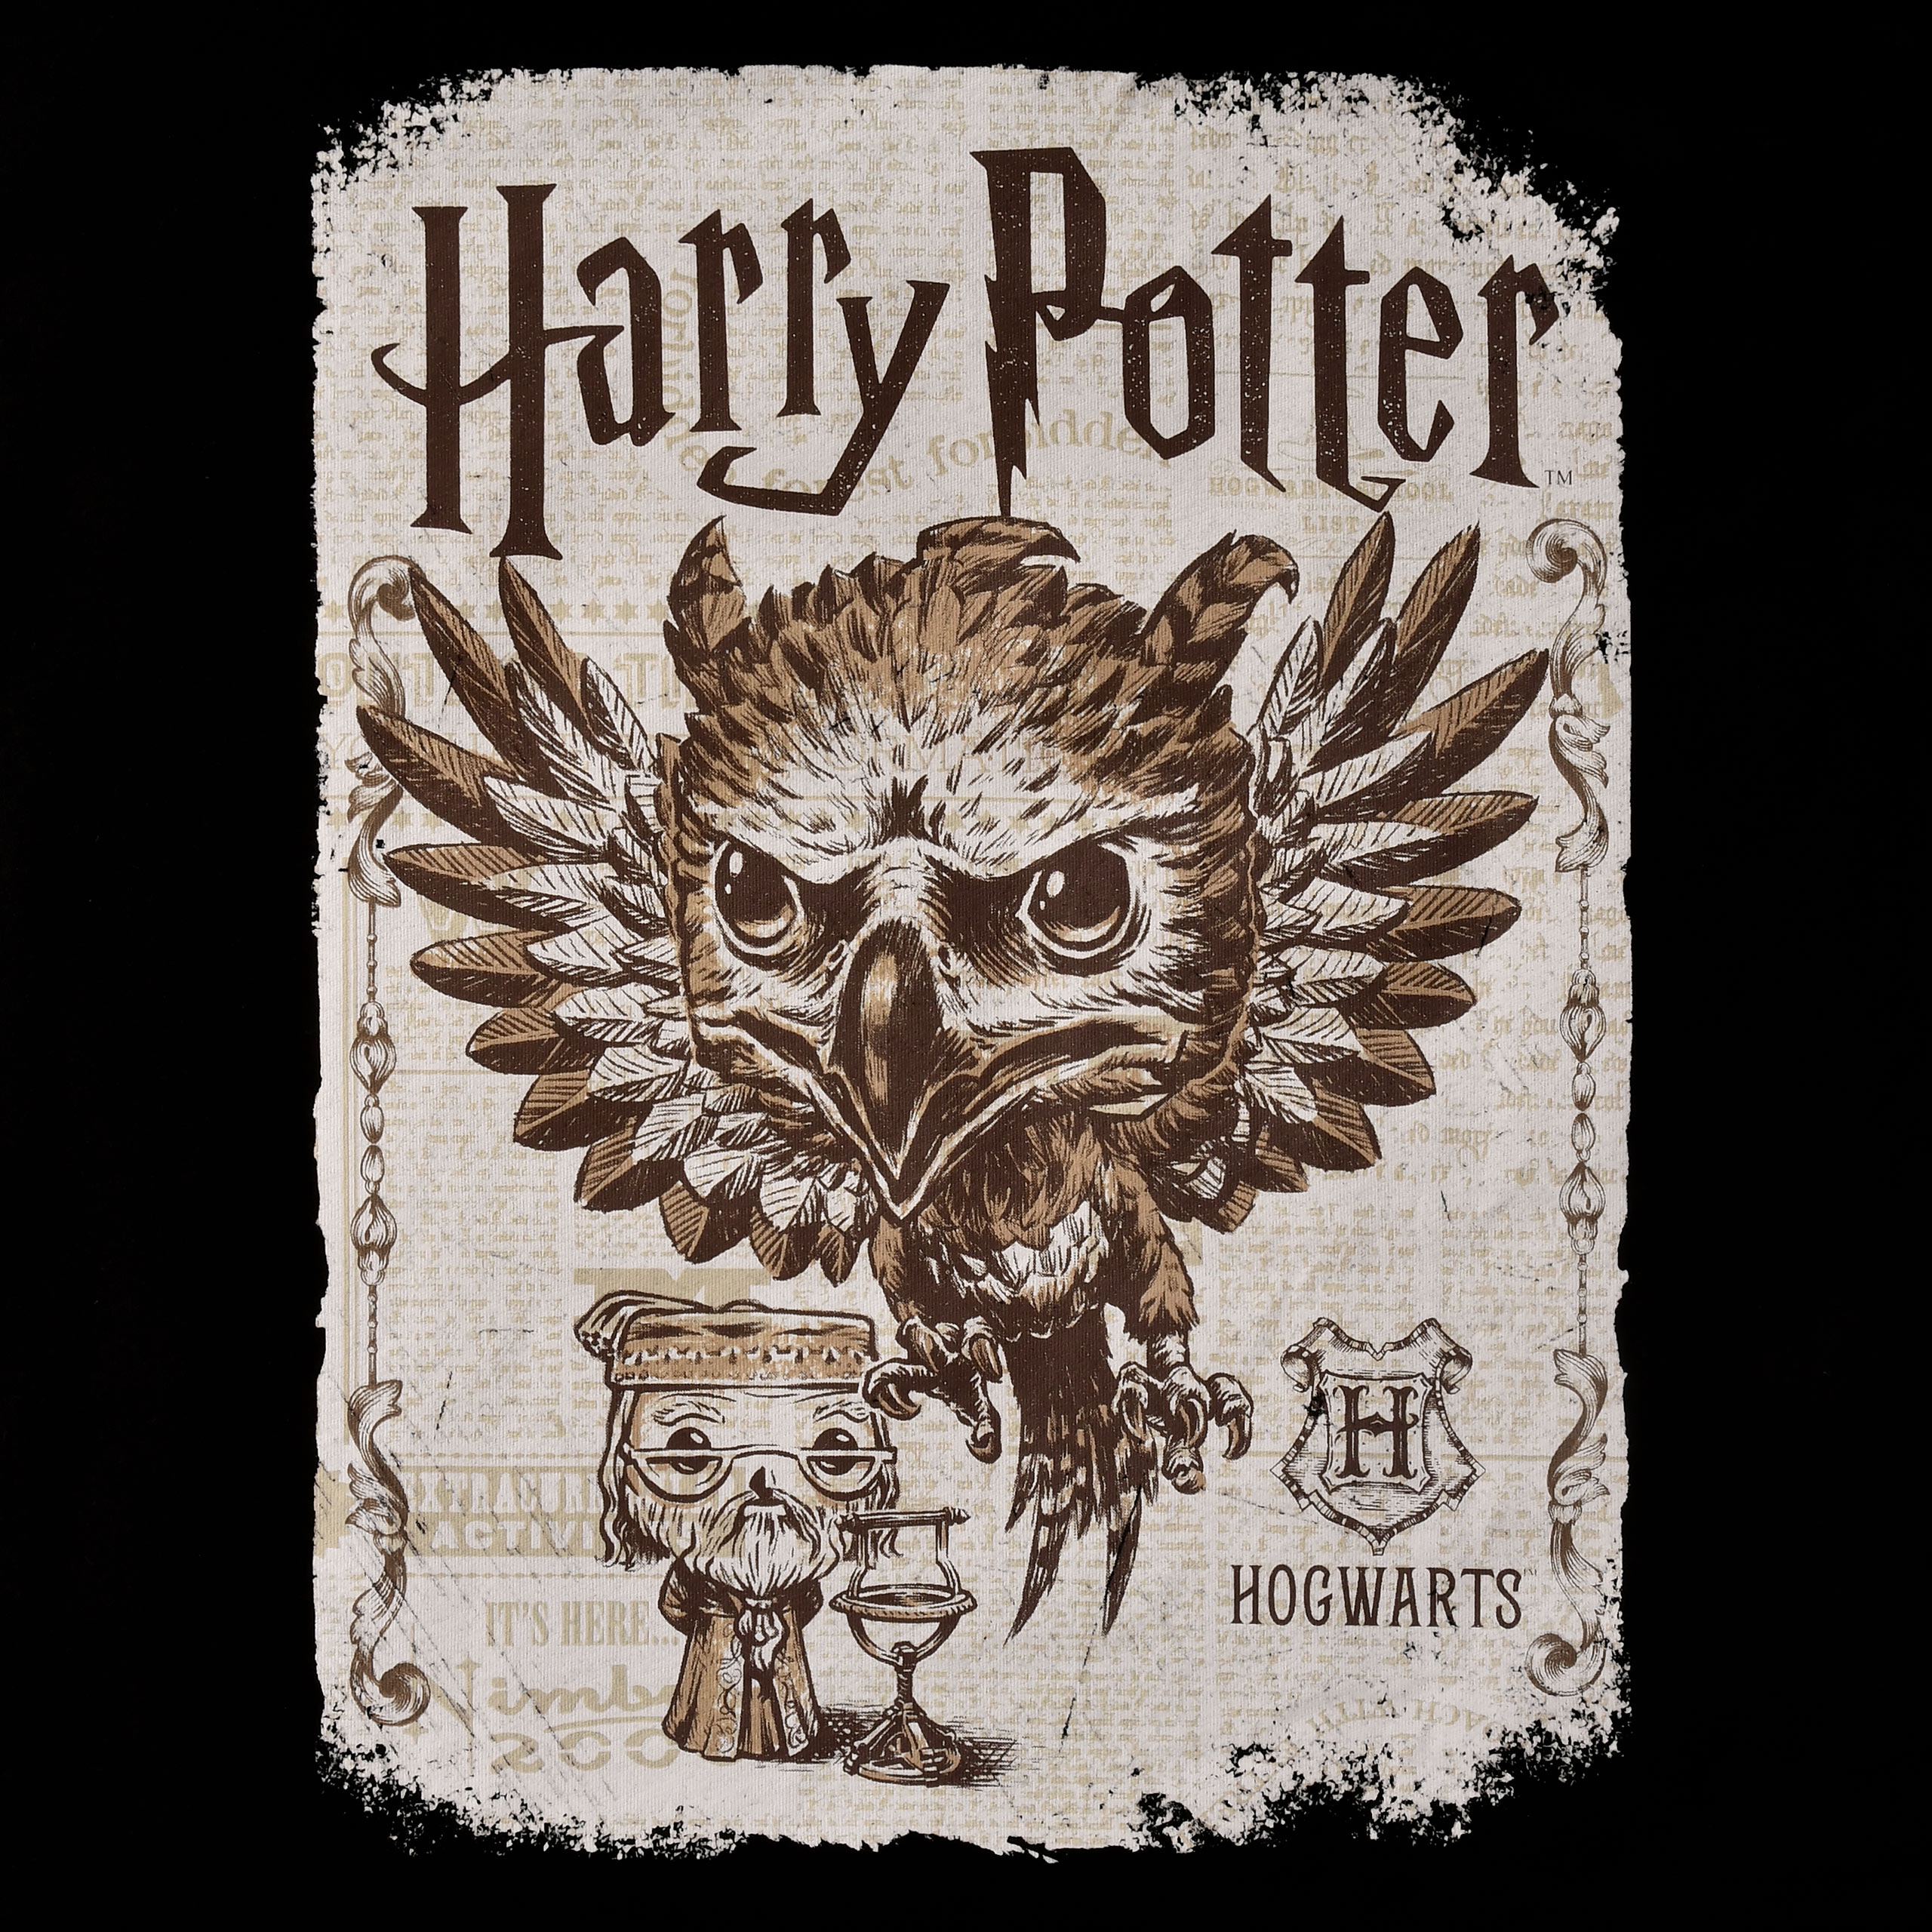 Fawkes T-shirt met Funko Pop Glow in the Dark figuur - Harry Potter